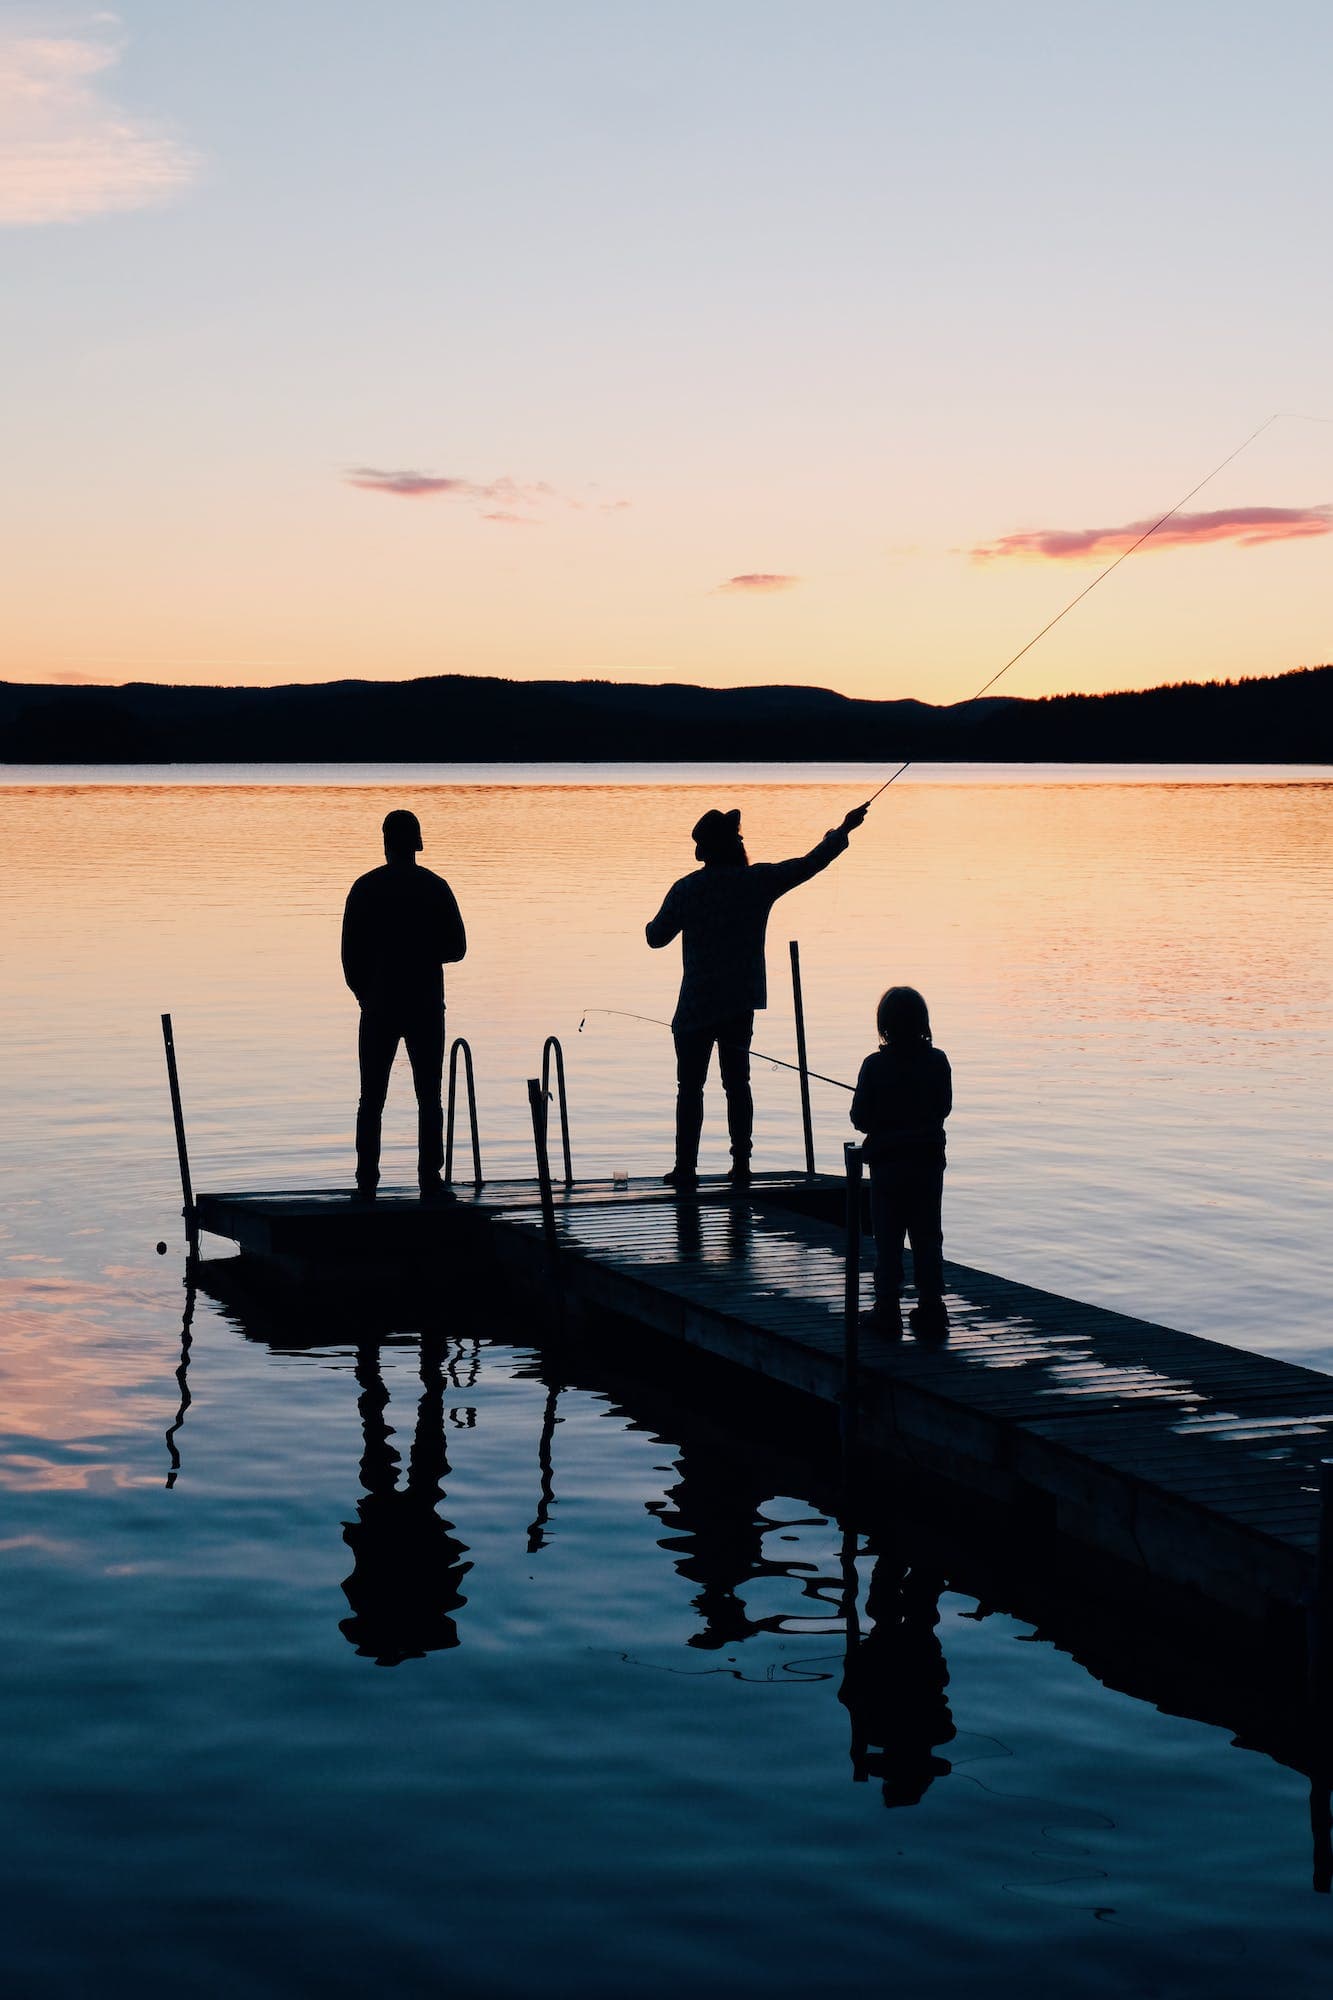 Kolme eri-ikäistä henkilöä kalastamassa laiturilla. Kuva on otettu auringonlaskun aikaan ja henkilöt ovat silhuetteja.